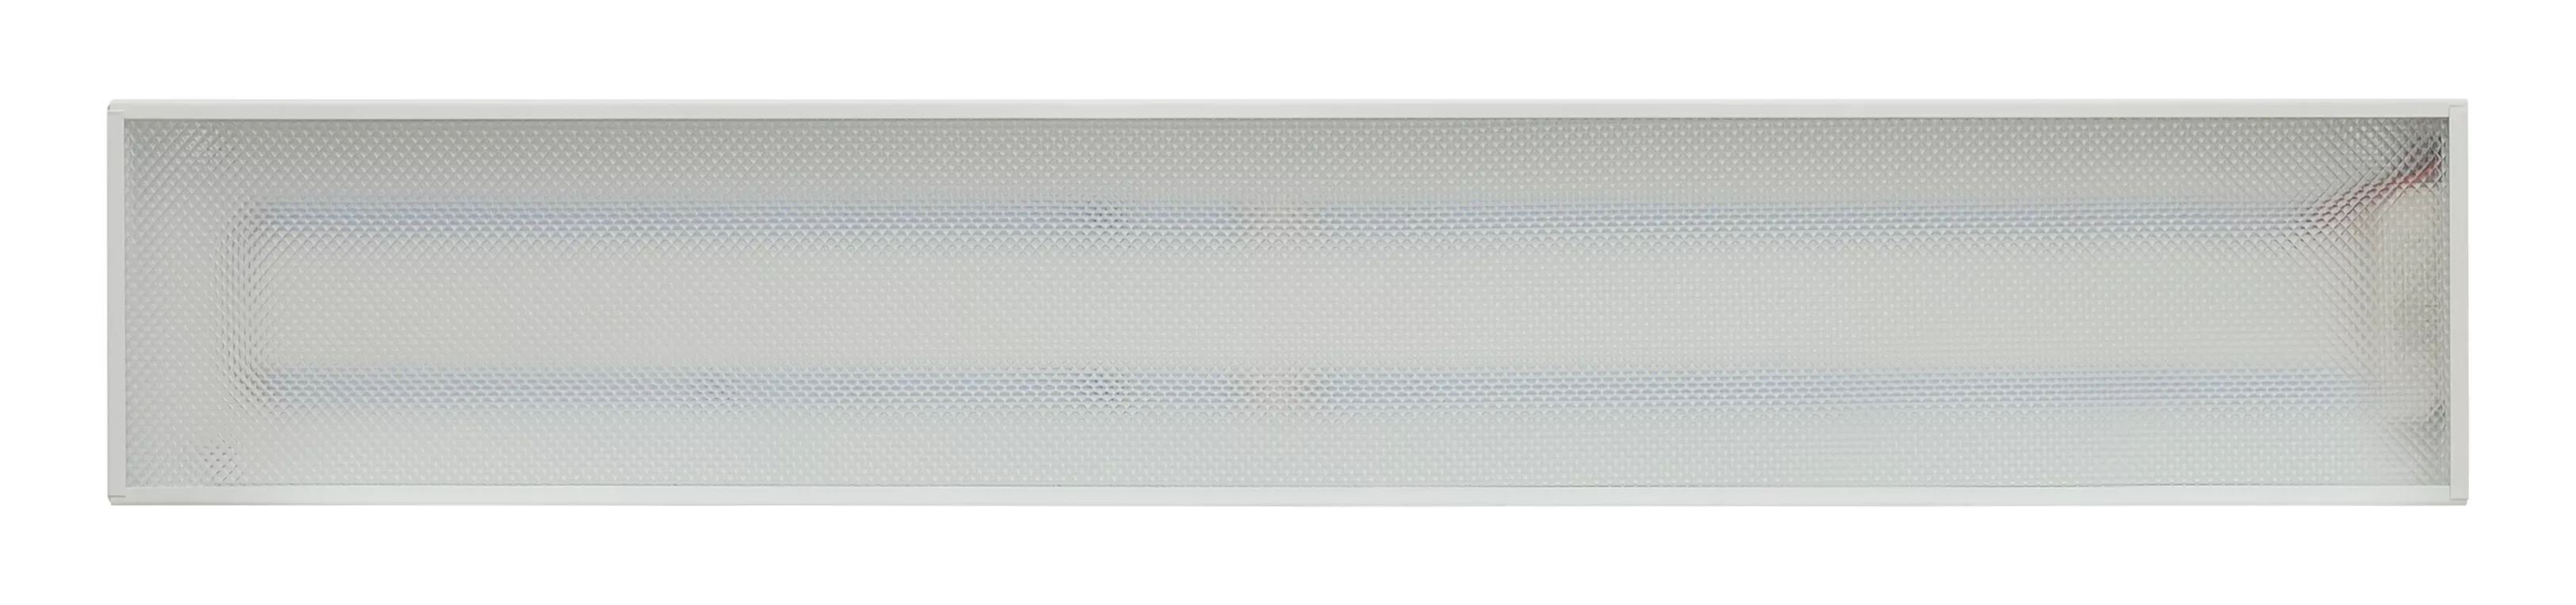 Аварийный светодиодный светильник ПСО 24 колотый лед IP20 600 мм